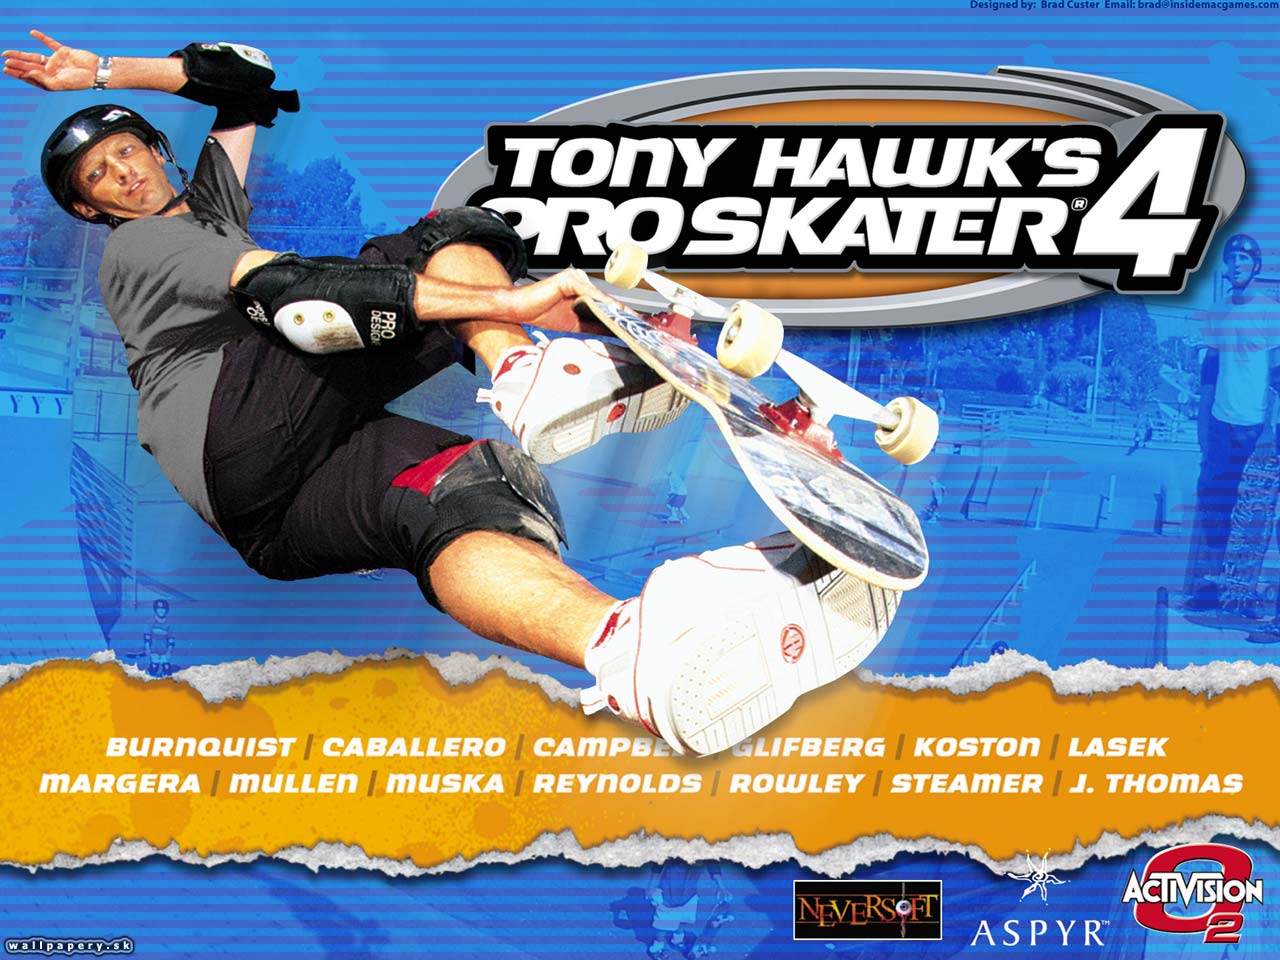 Tony Hawk's Pro Skater 4 - wallpaper 1